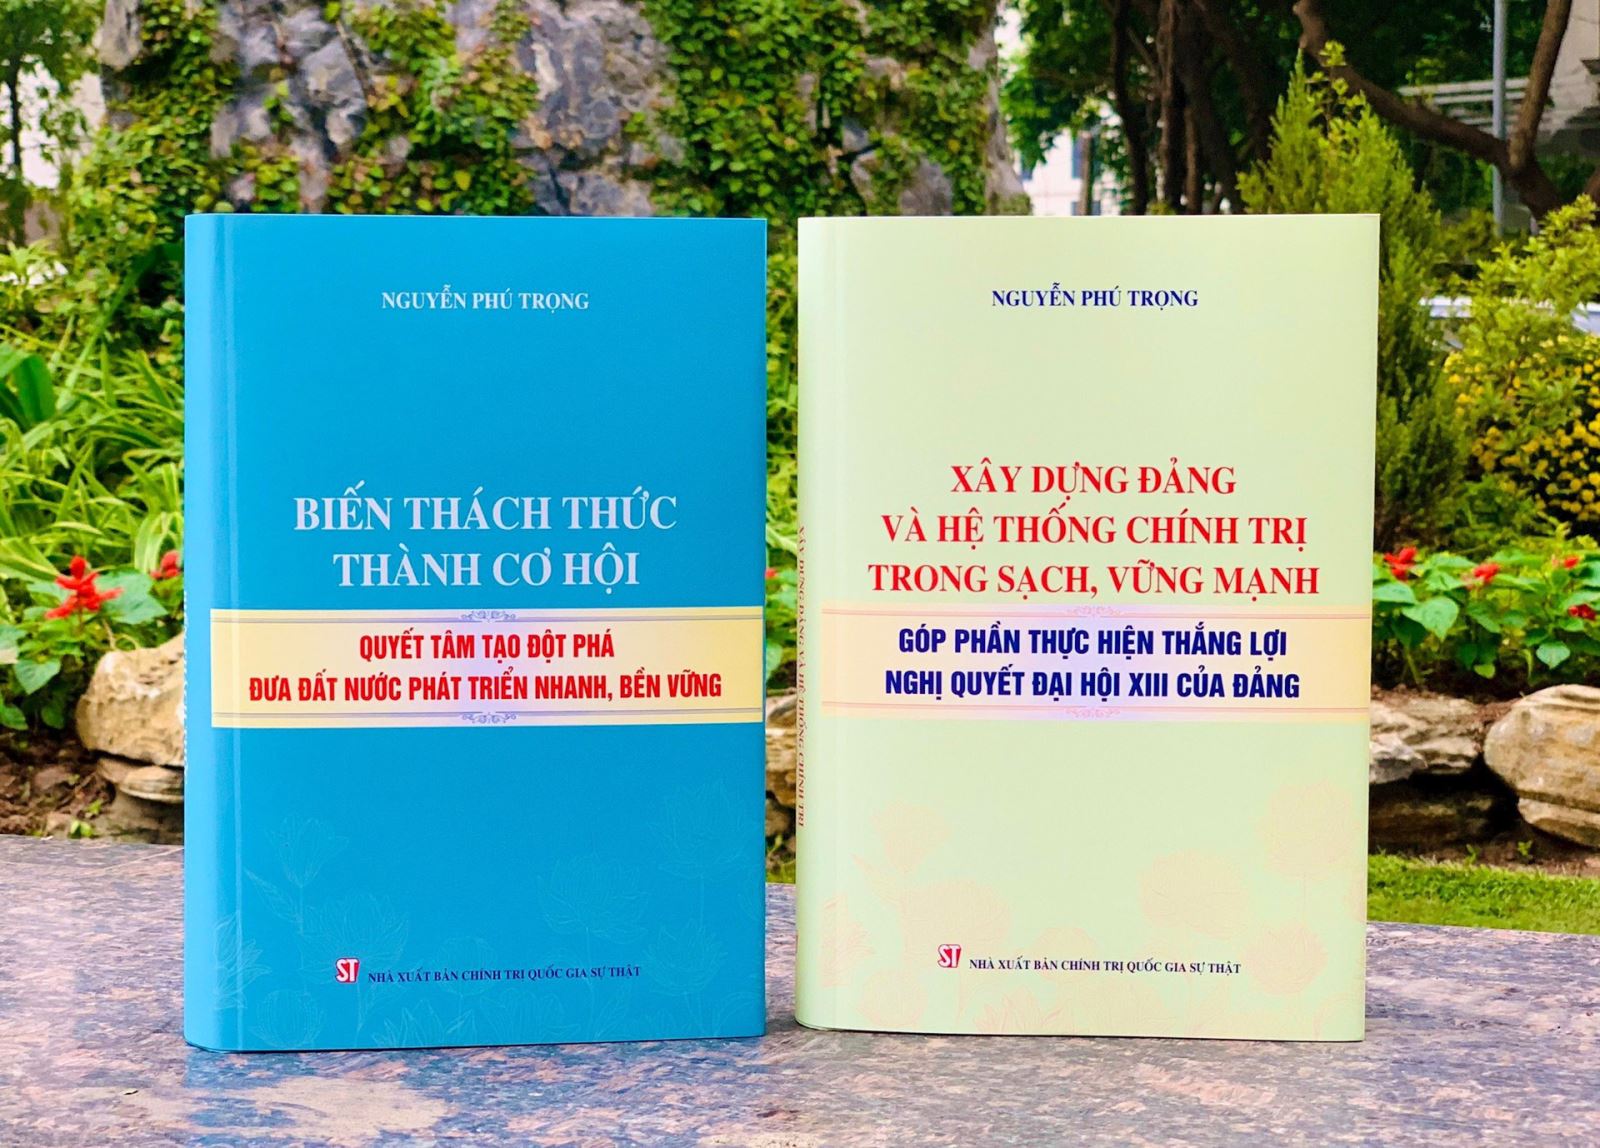 Tầm nhìn chiến lược và quyết tâm chính trị của Đảng ta qua hai cuốn sách vừa xuất bản của Tổng Bí thư Nguyễn Phú Trọng